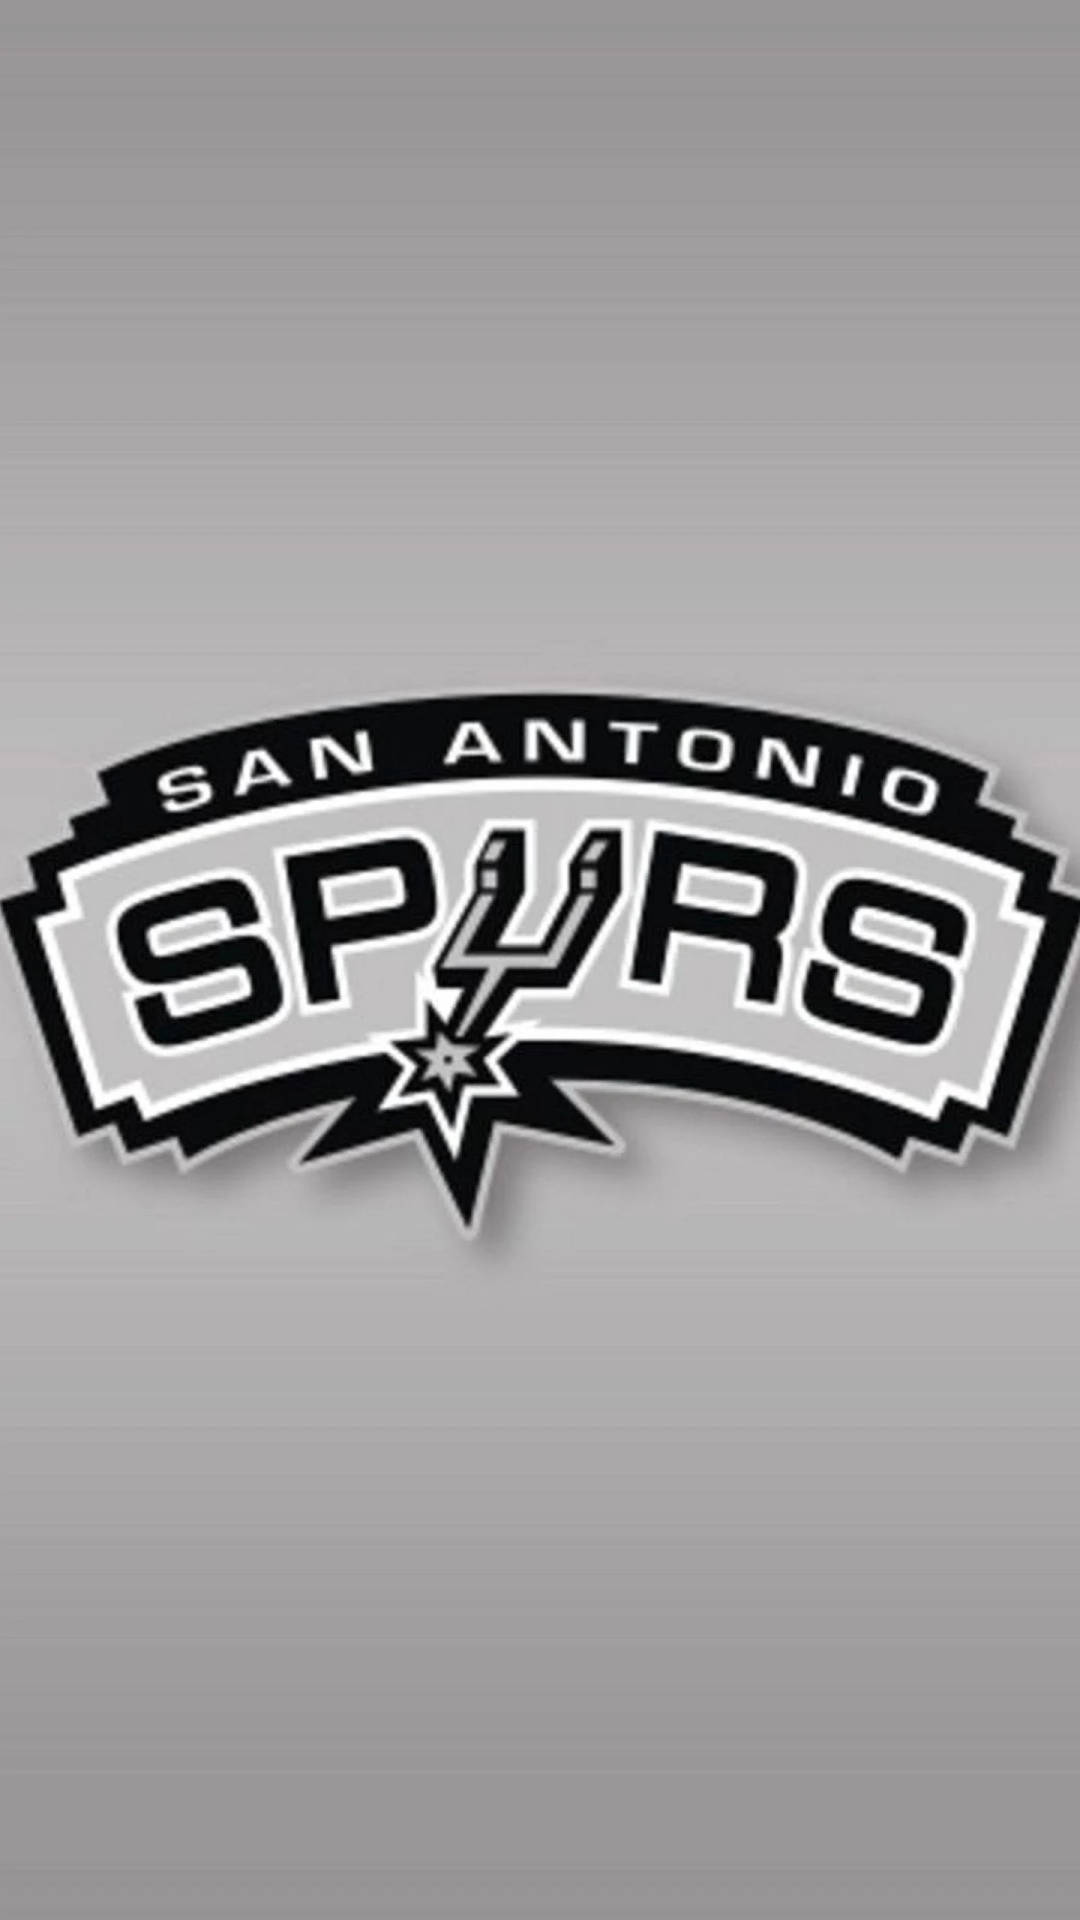 San Antonio Spurs Historic Logo Wallpaper